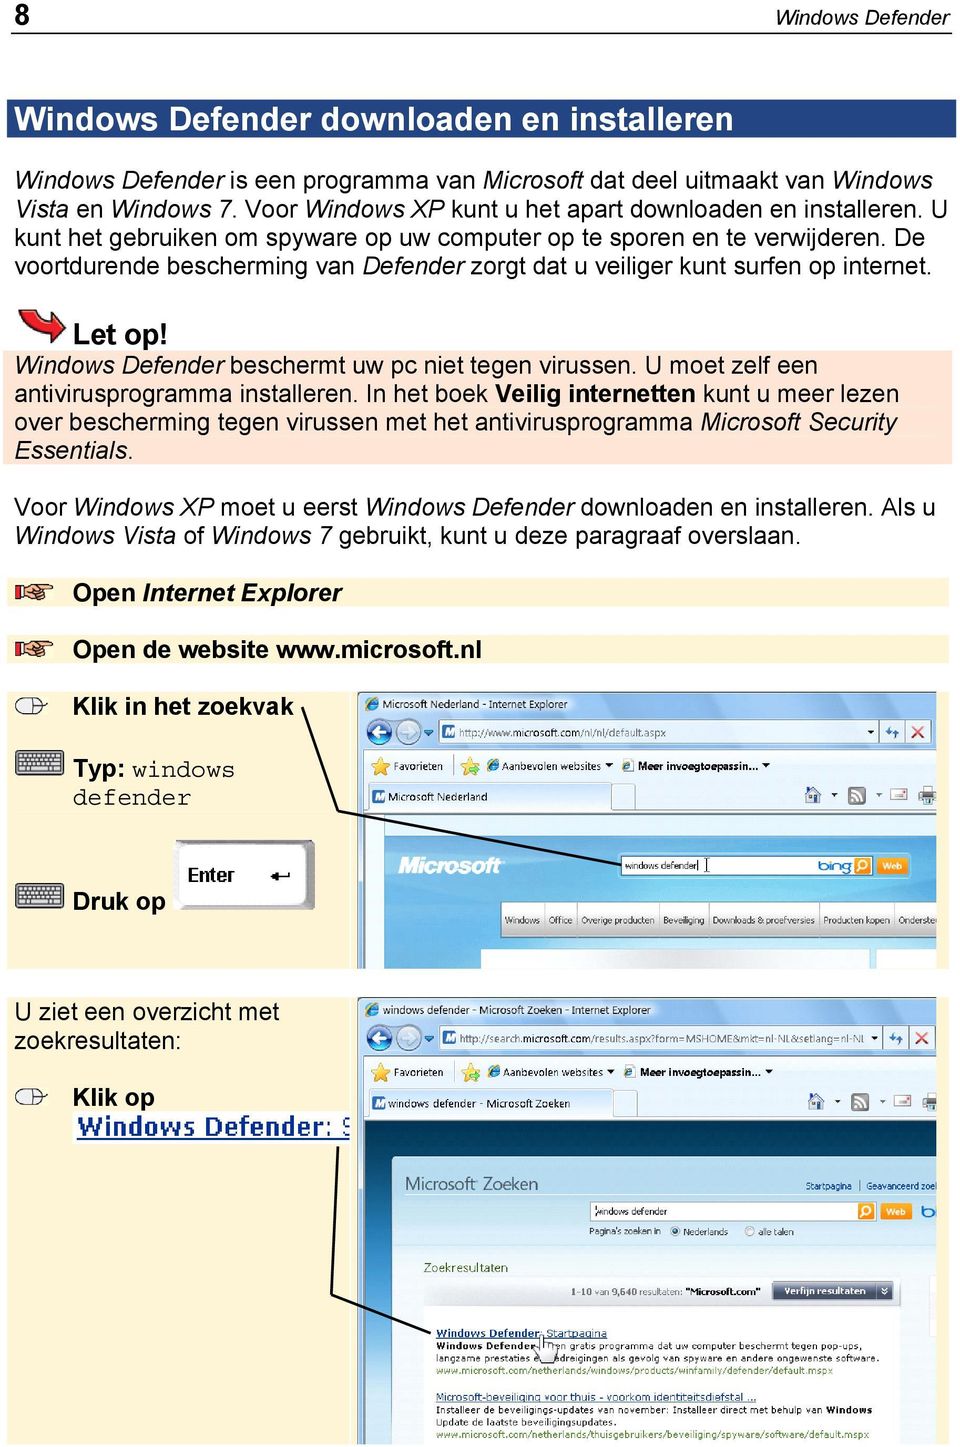 De voortdurende bescherming van Defender zorgt dat u veiliger kunt surfen op internet. Let op! Windows Defender beschermt uw pc niet tegen virussen. U moet zelf een antivirusprogramma installeren.